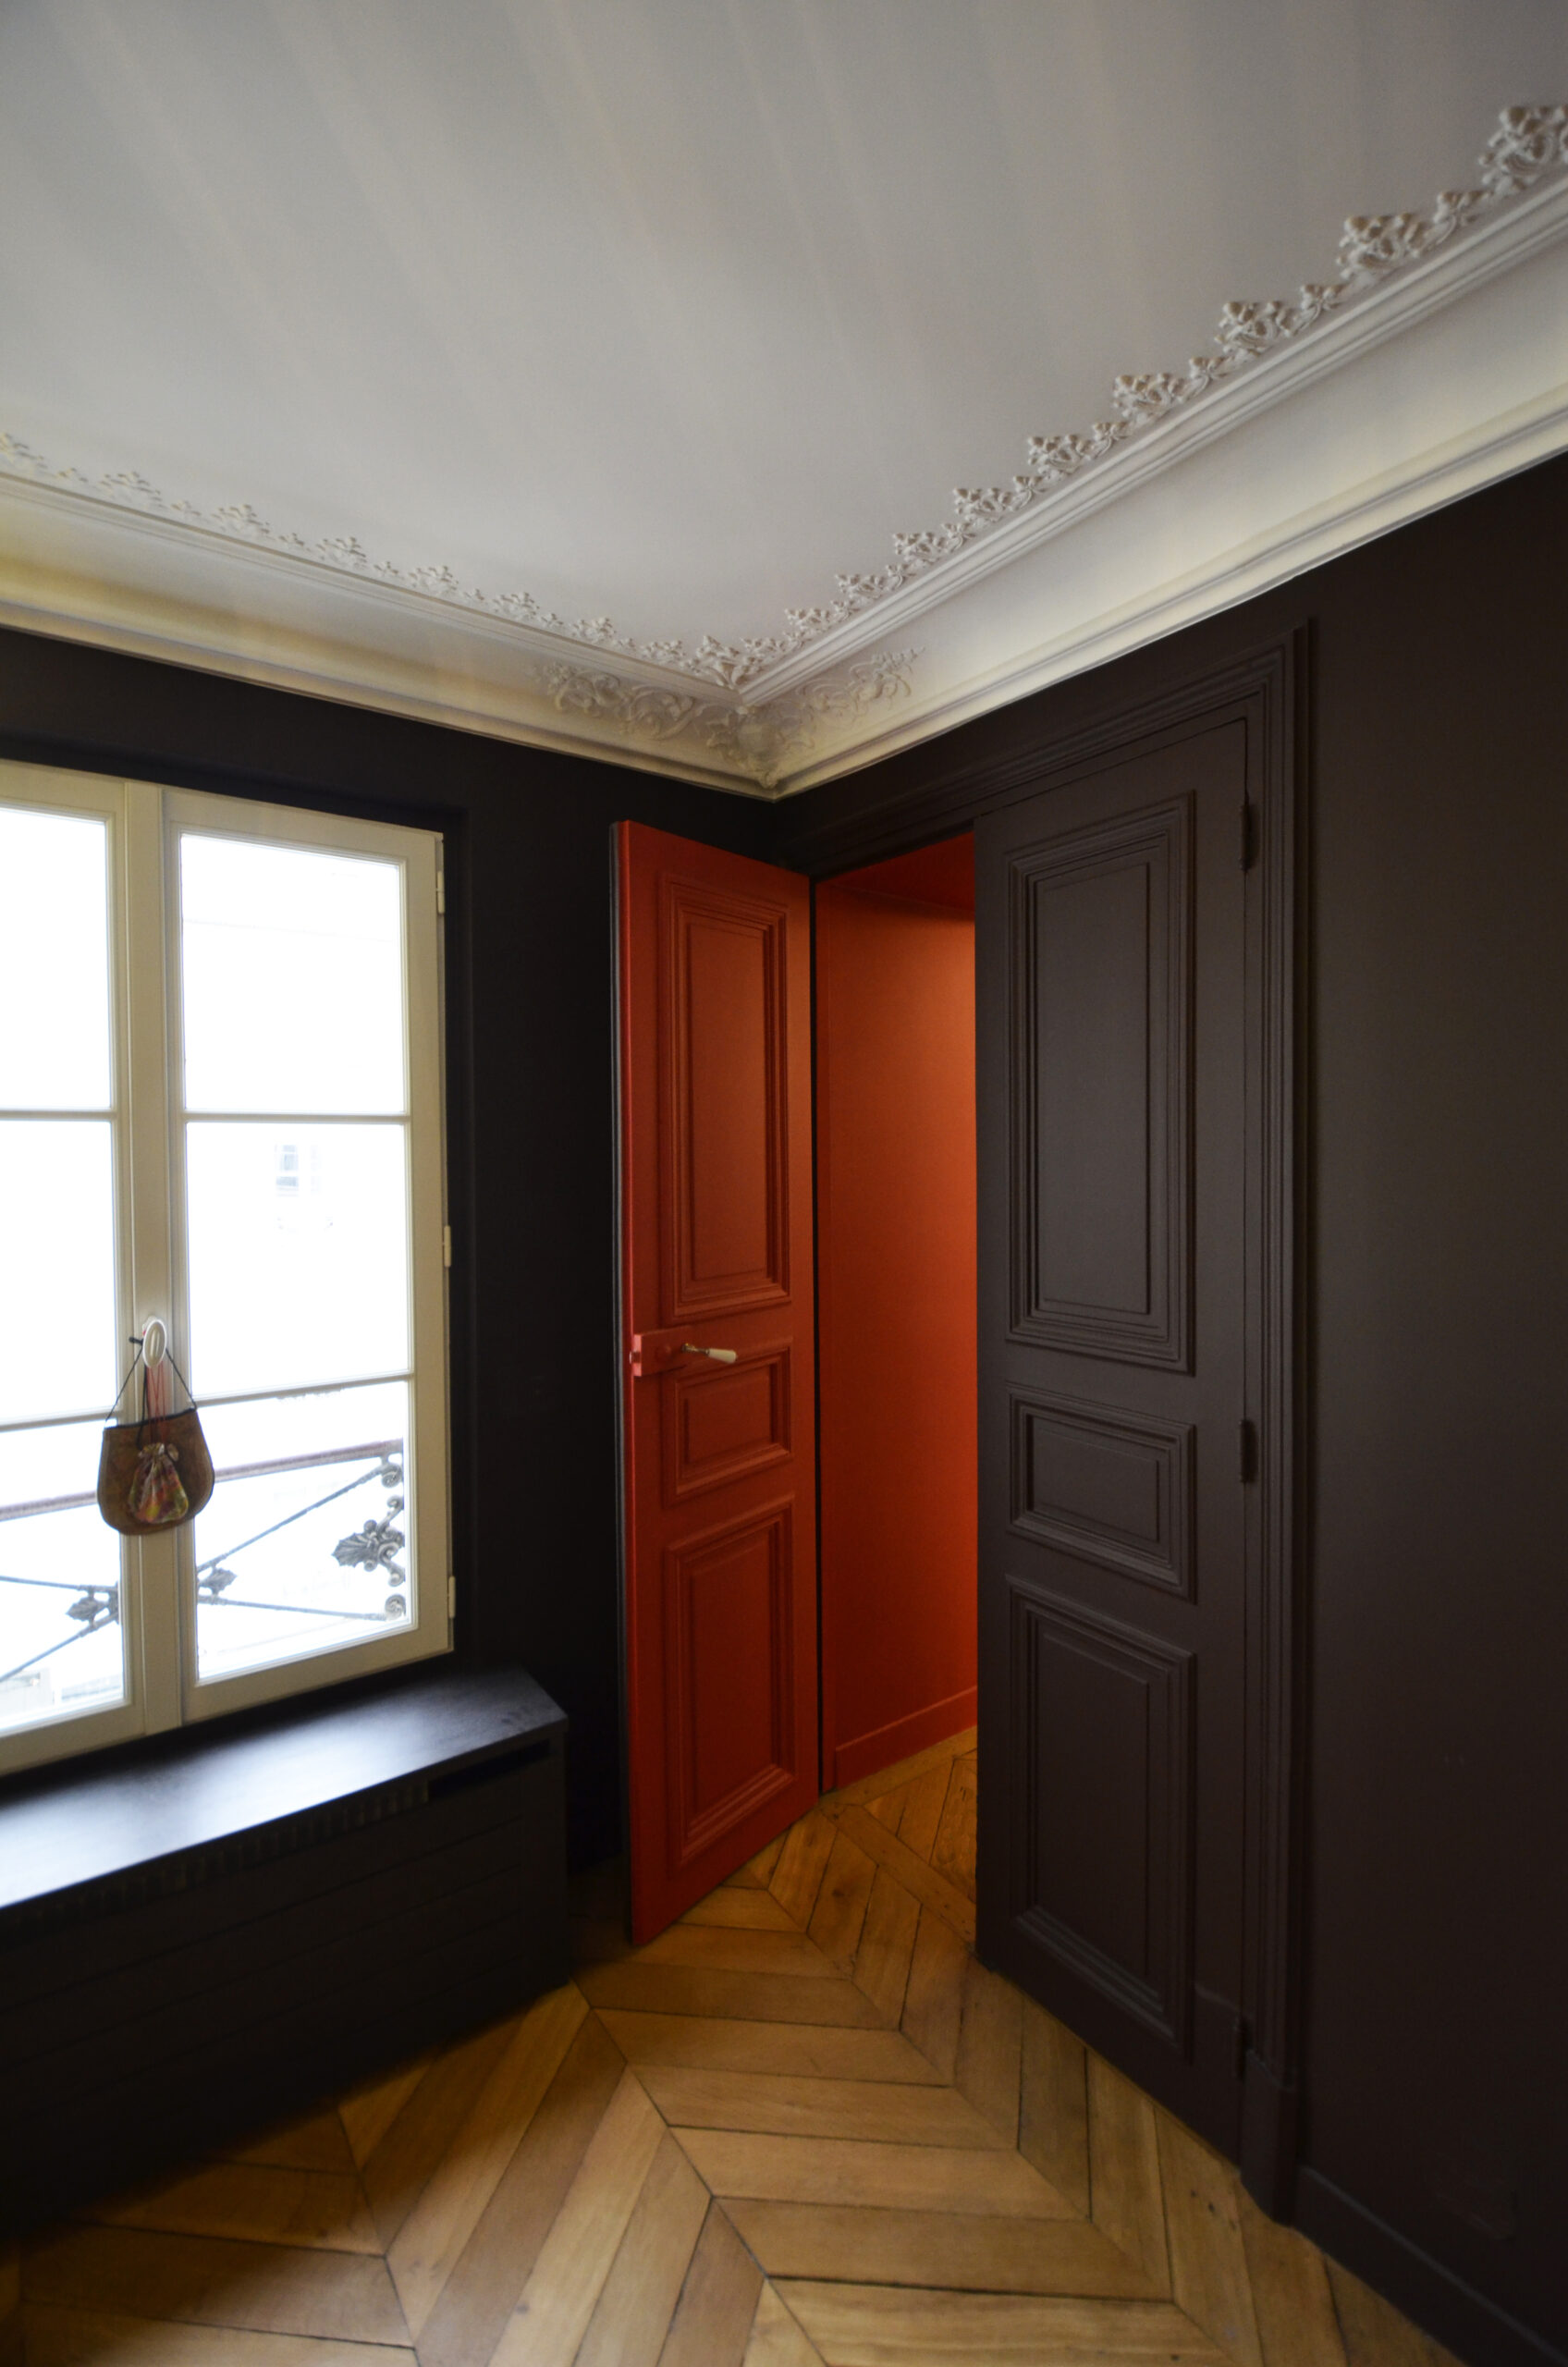 murs noir et rouge, mur rouge, décoration appartement haussmannien, décoration baroque